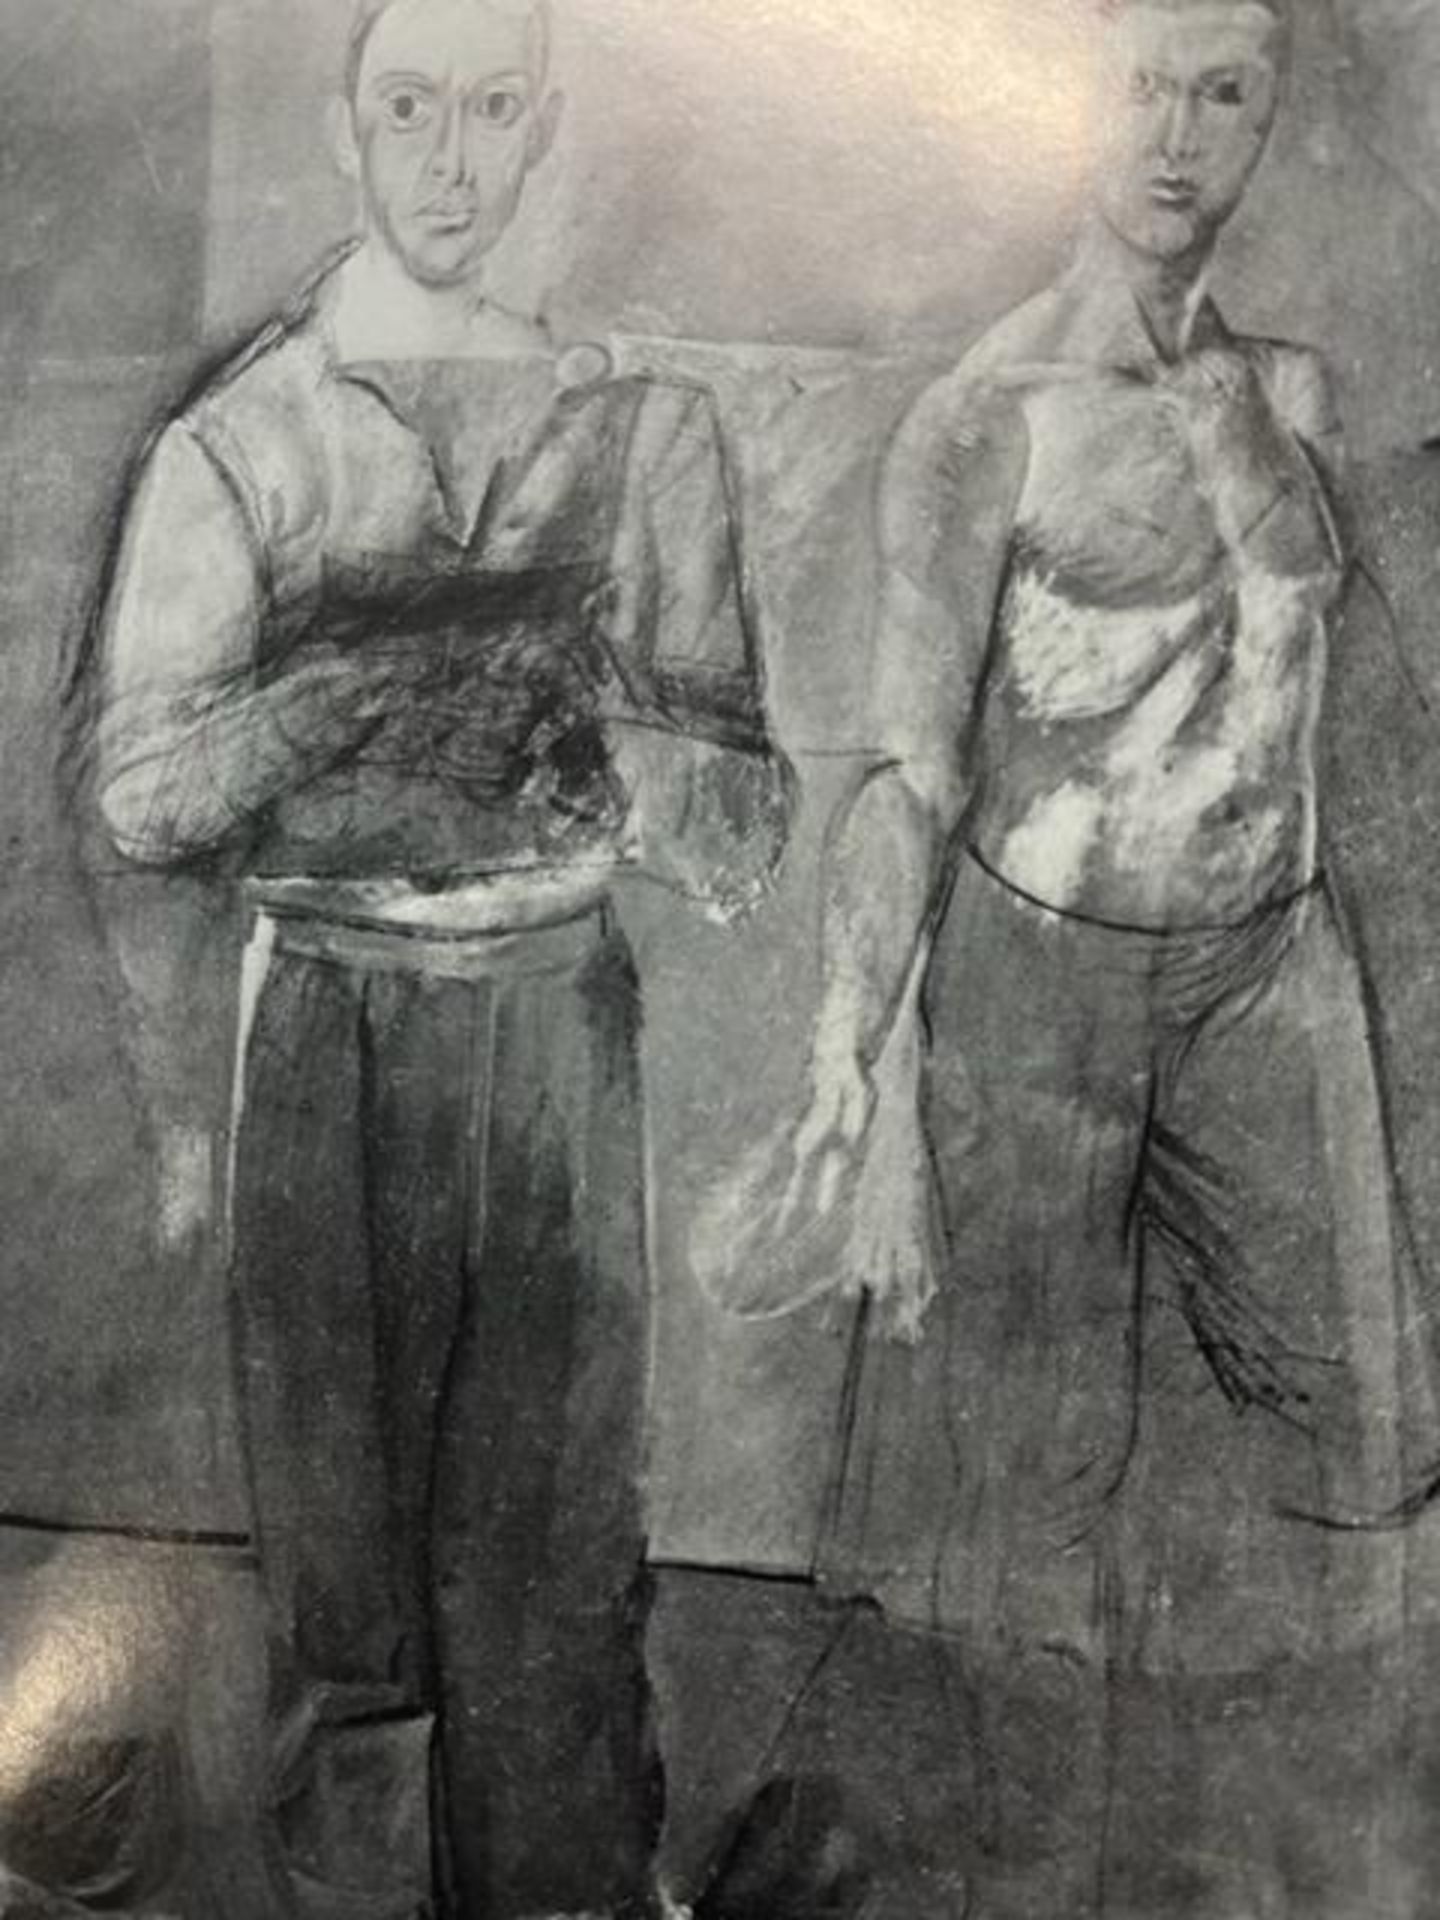 Willem de Kooning "Two Men Standing" Print. - Bild 5 aus 6